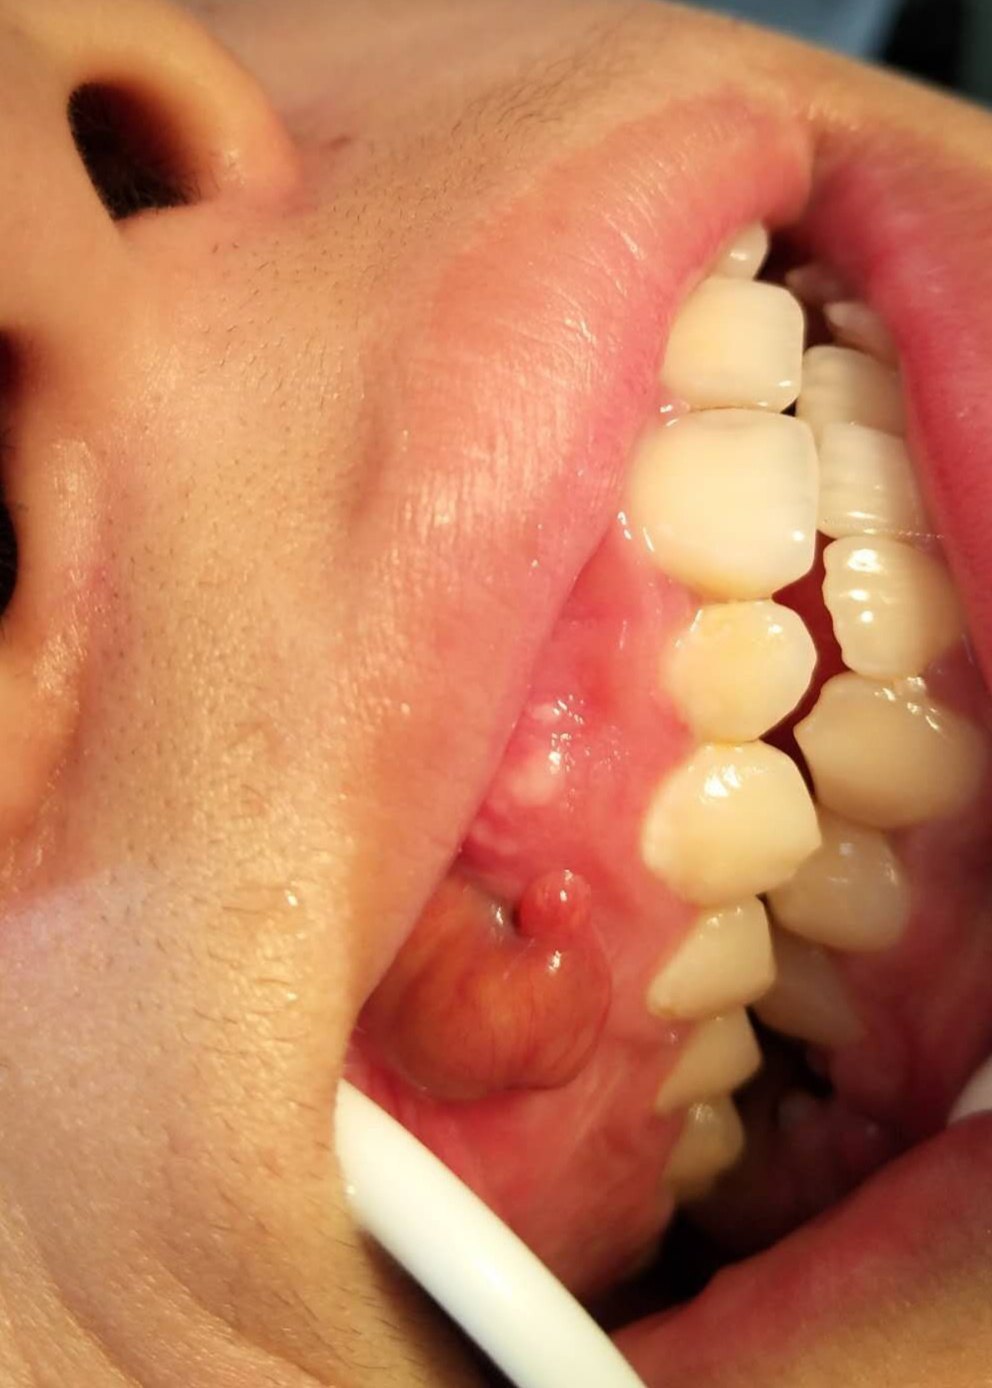 如上图:右上第1双尖牙的牙龈上方可见一个红肿的包块,摸起来比较软,轻